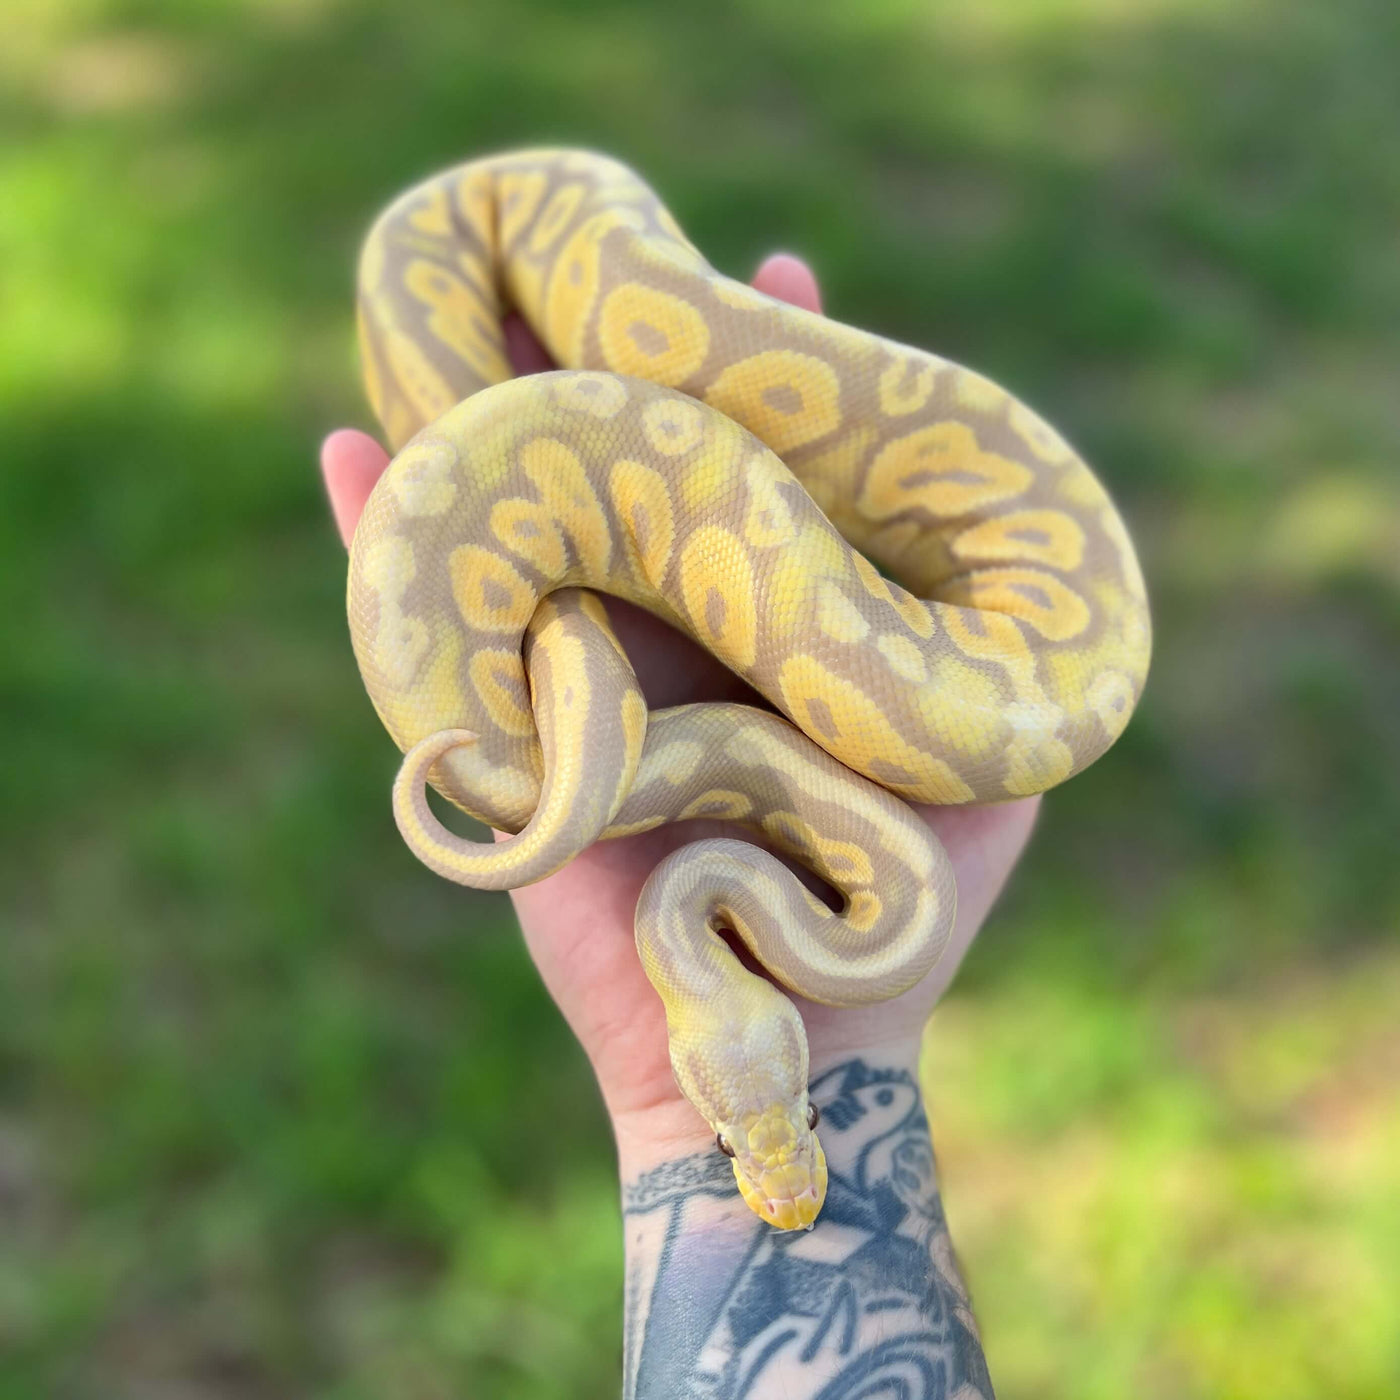 Pet Ball Python Snake For Sale